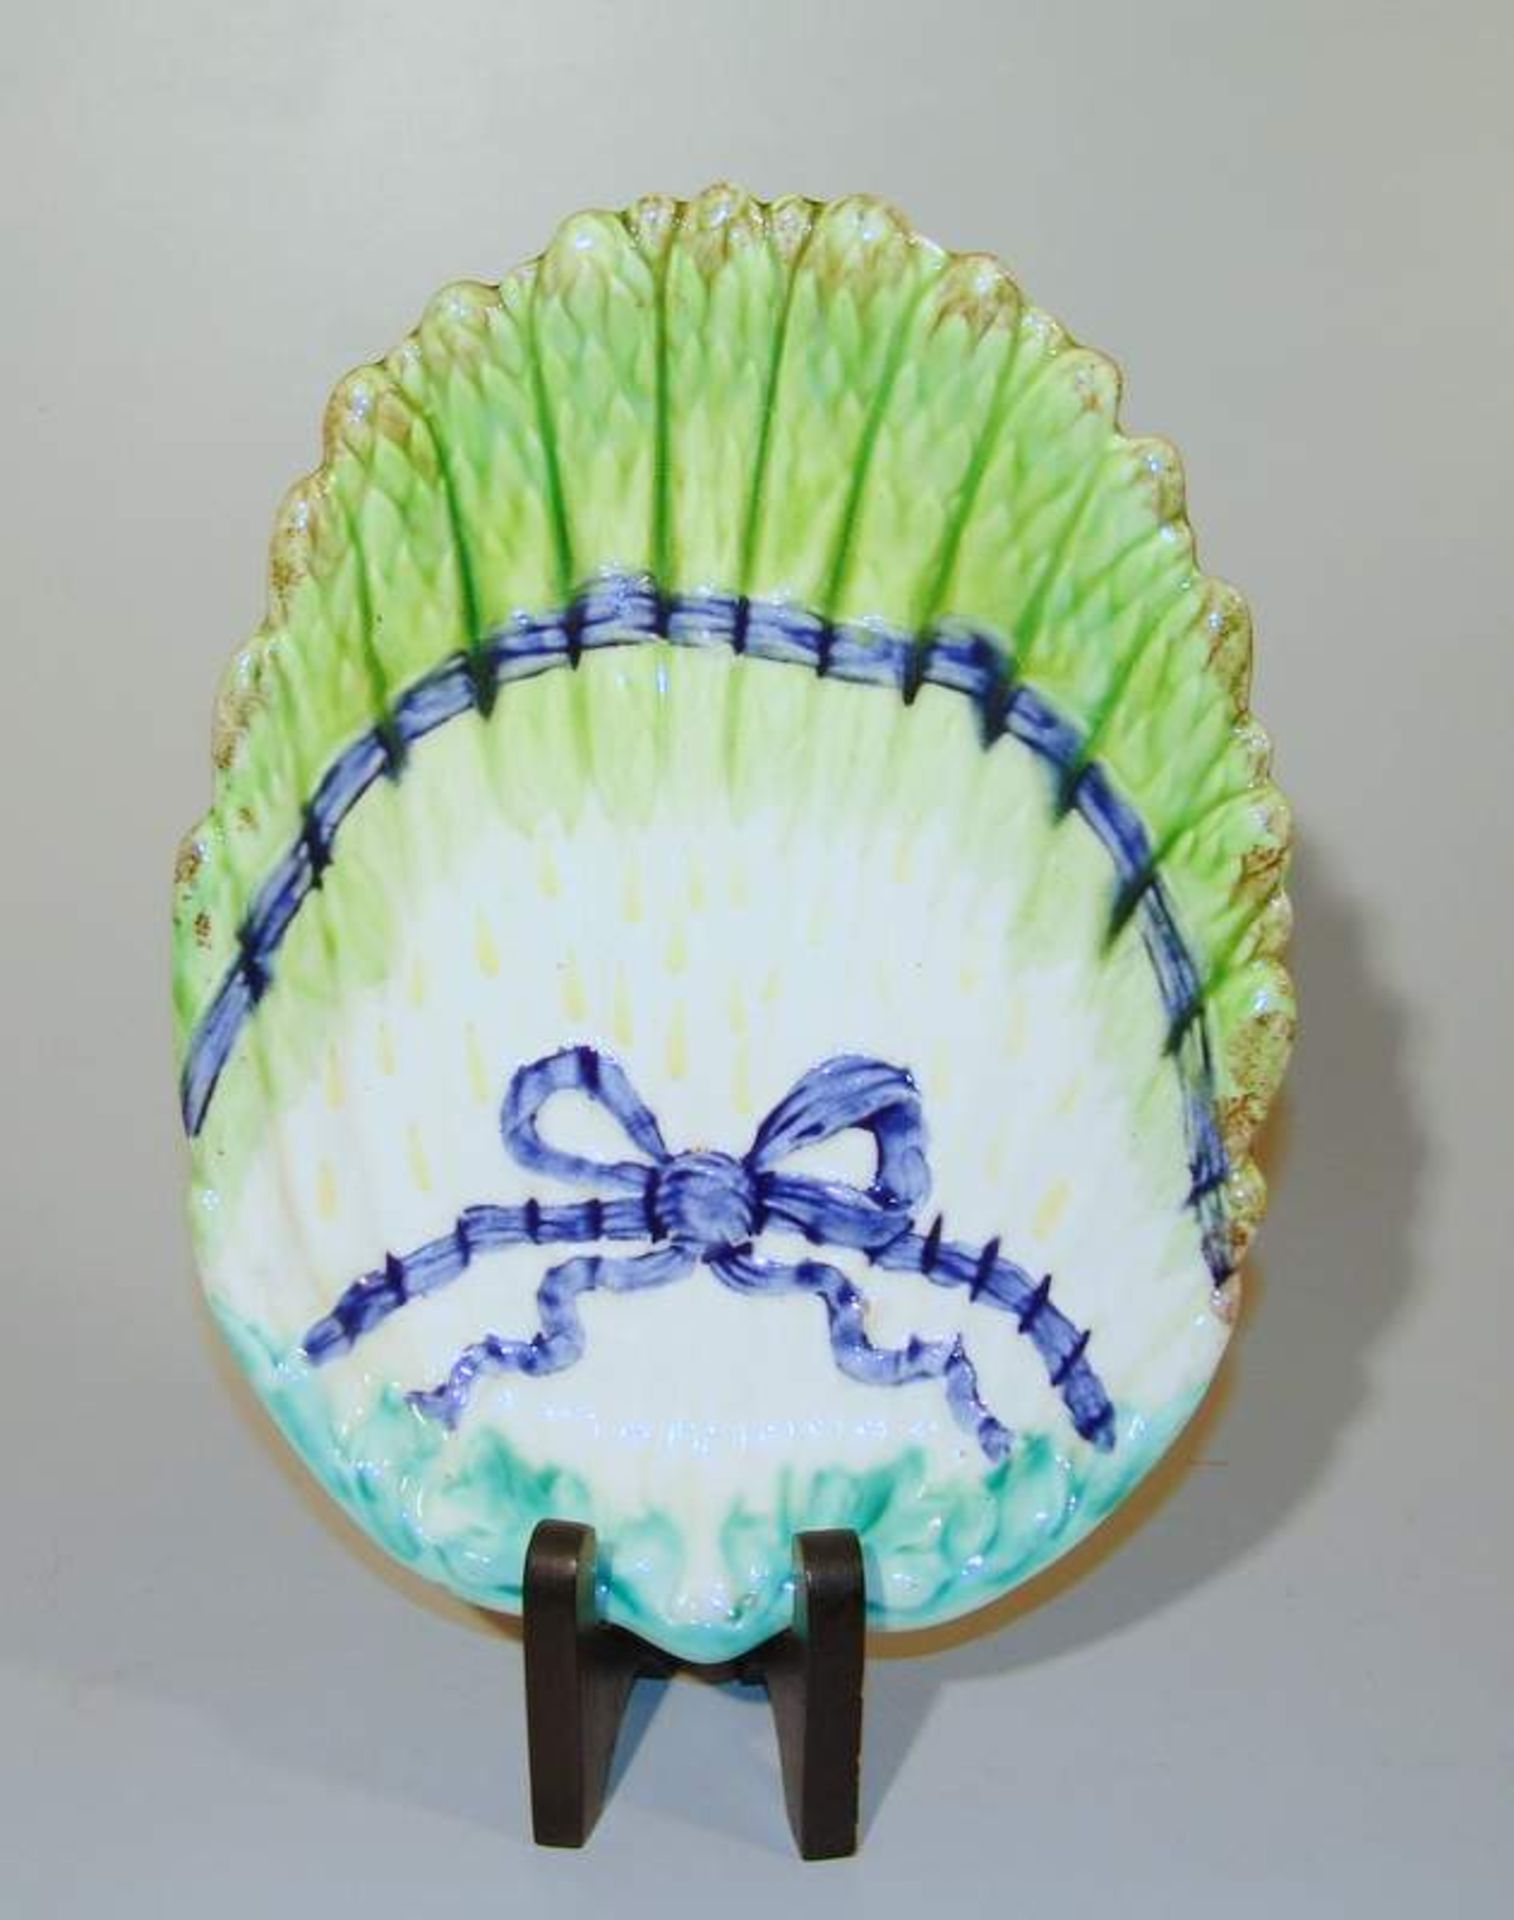 Spargelplatte, Frankreich, 20. Jhd.Keramik farbig staffiert, flache Platte in Form eines